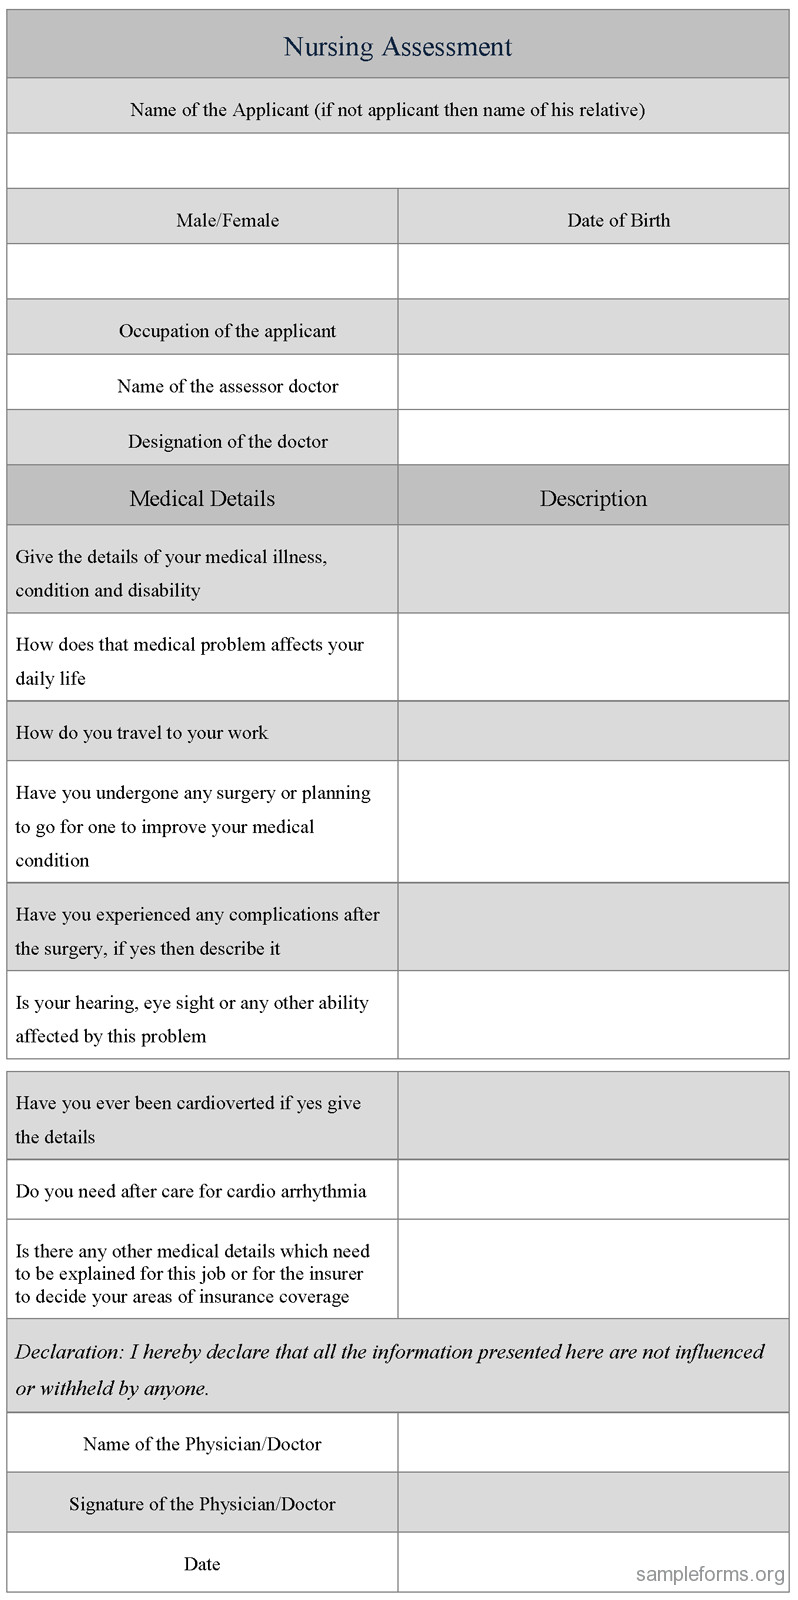 Nursing Assessment Form Sample Forms